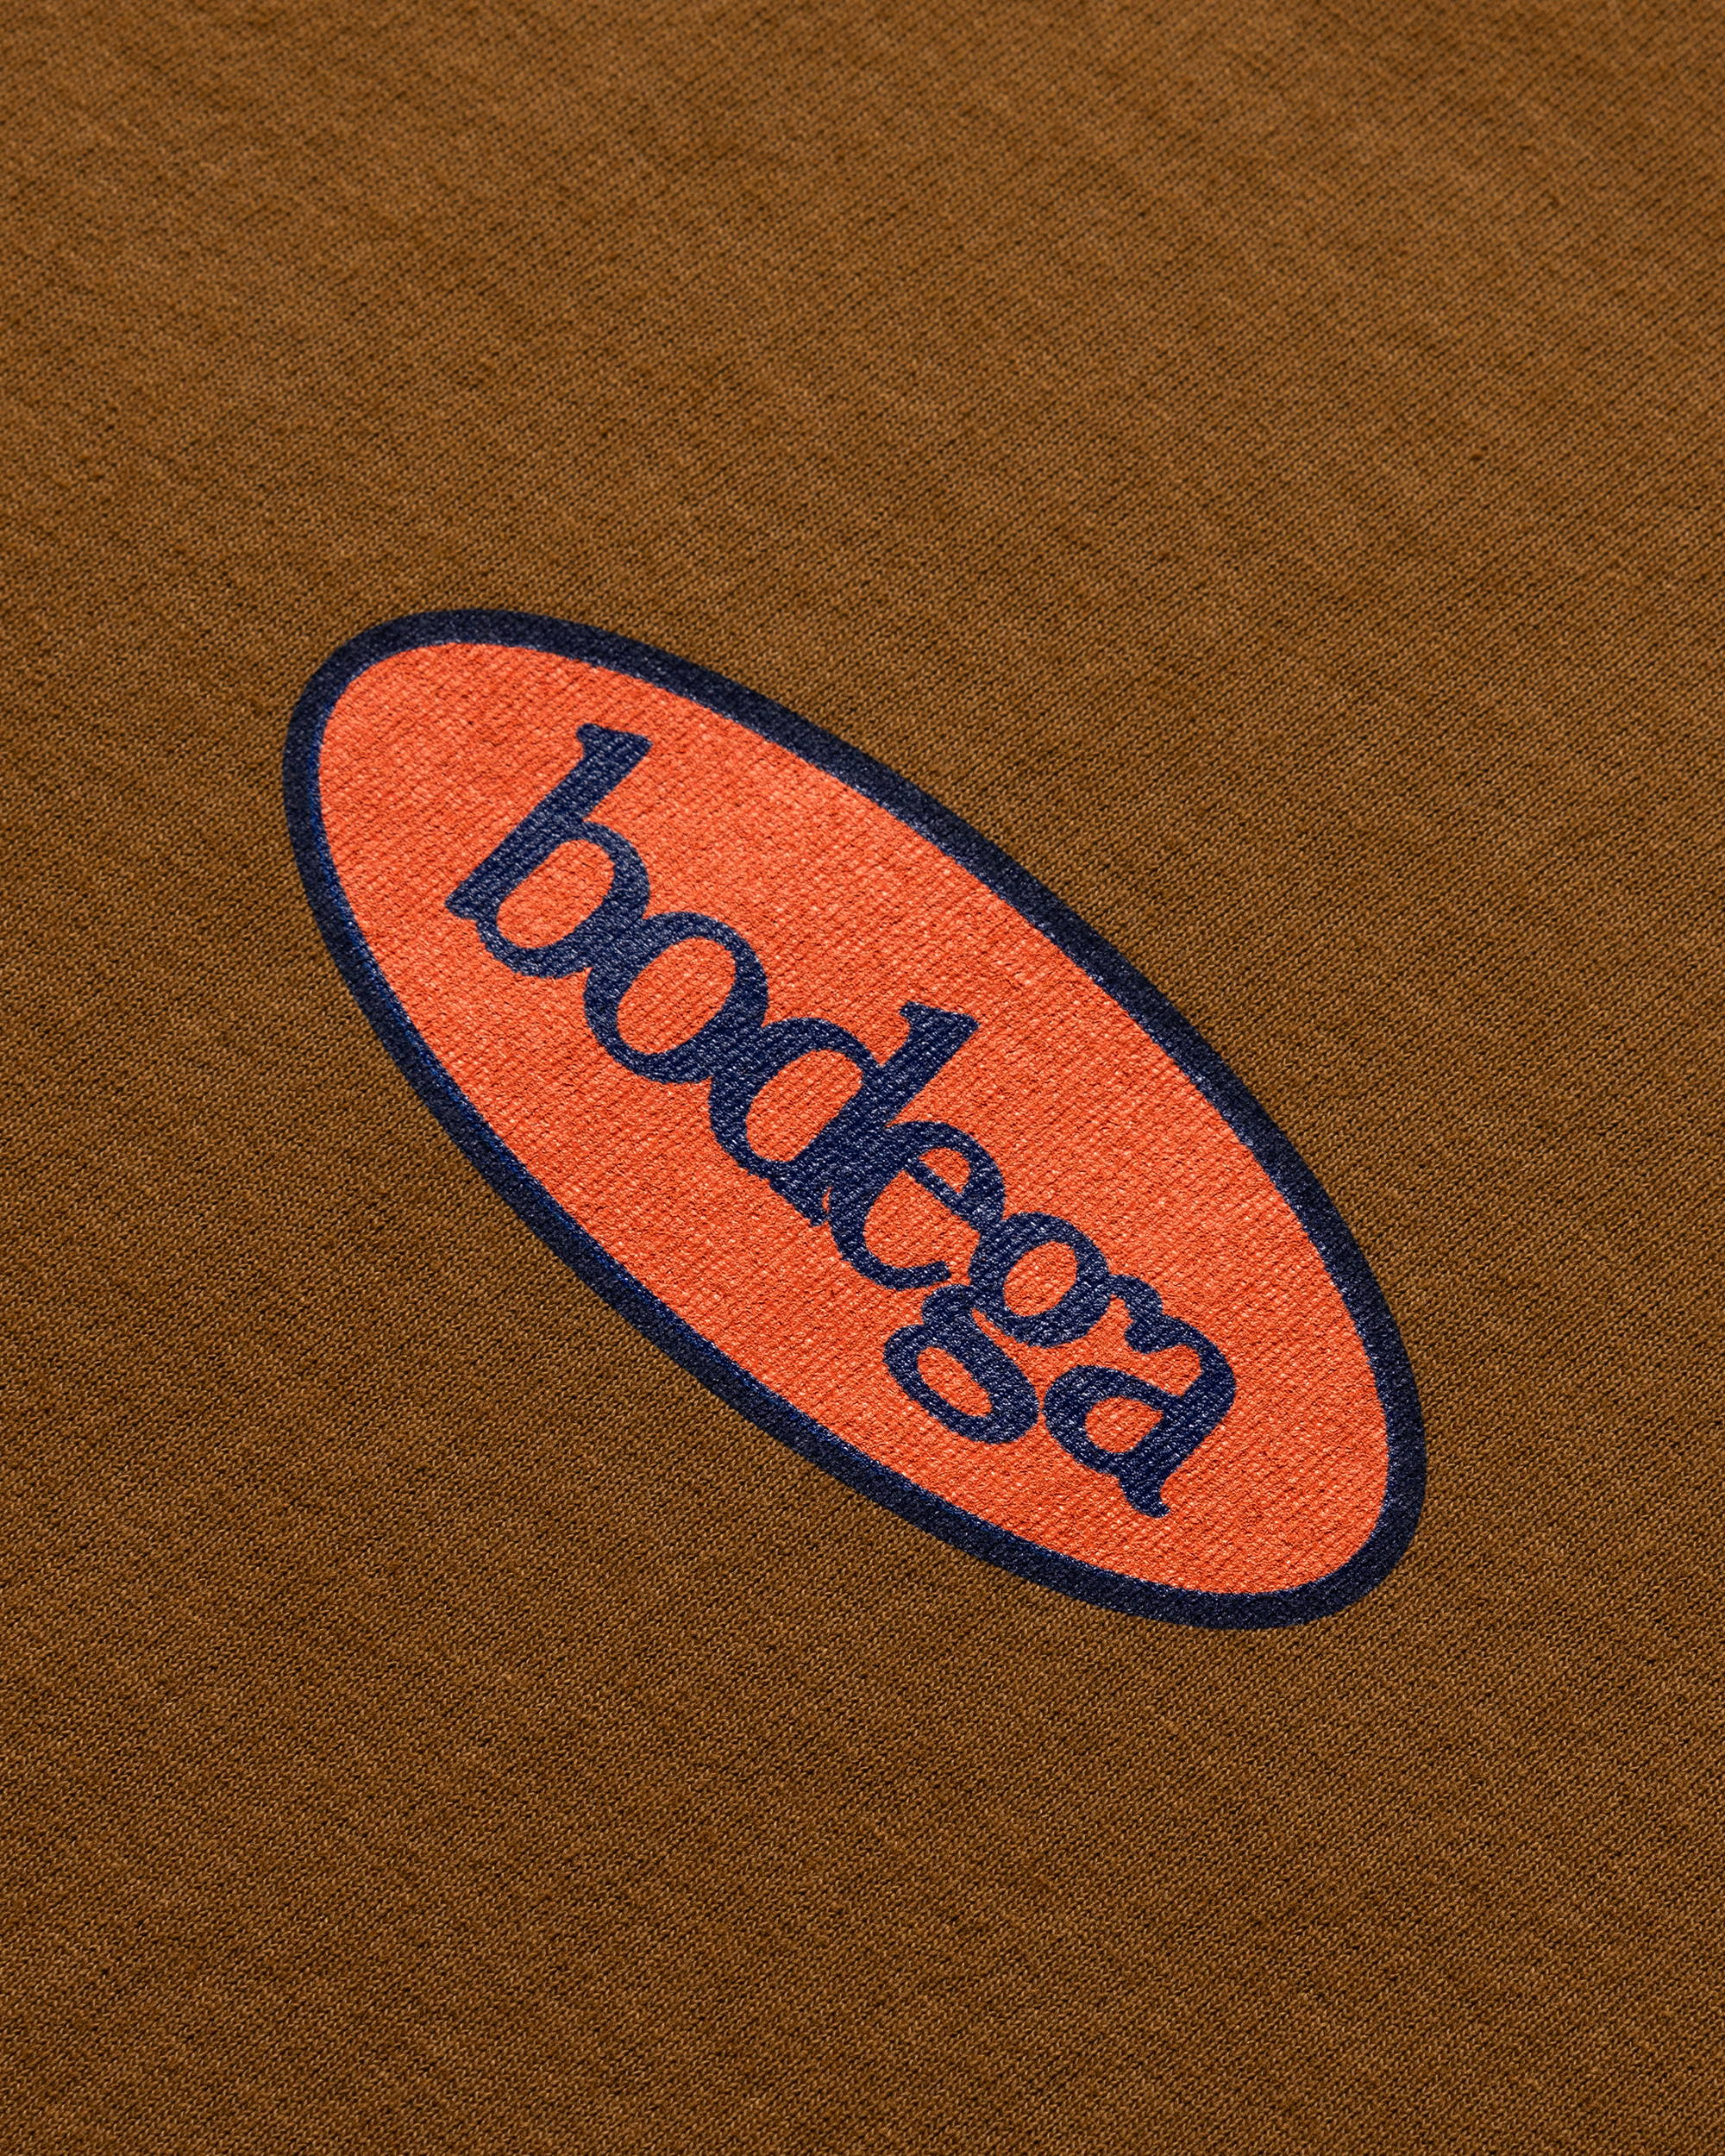 A Closer Look: Bodega x Todd Snyder 